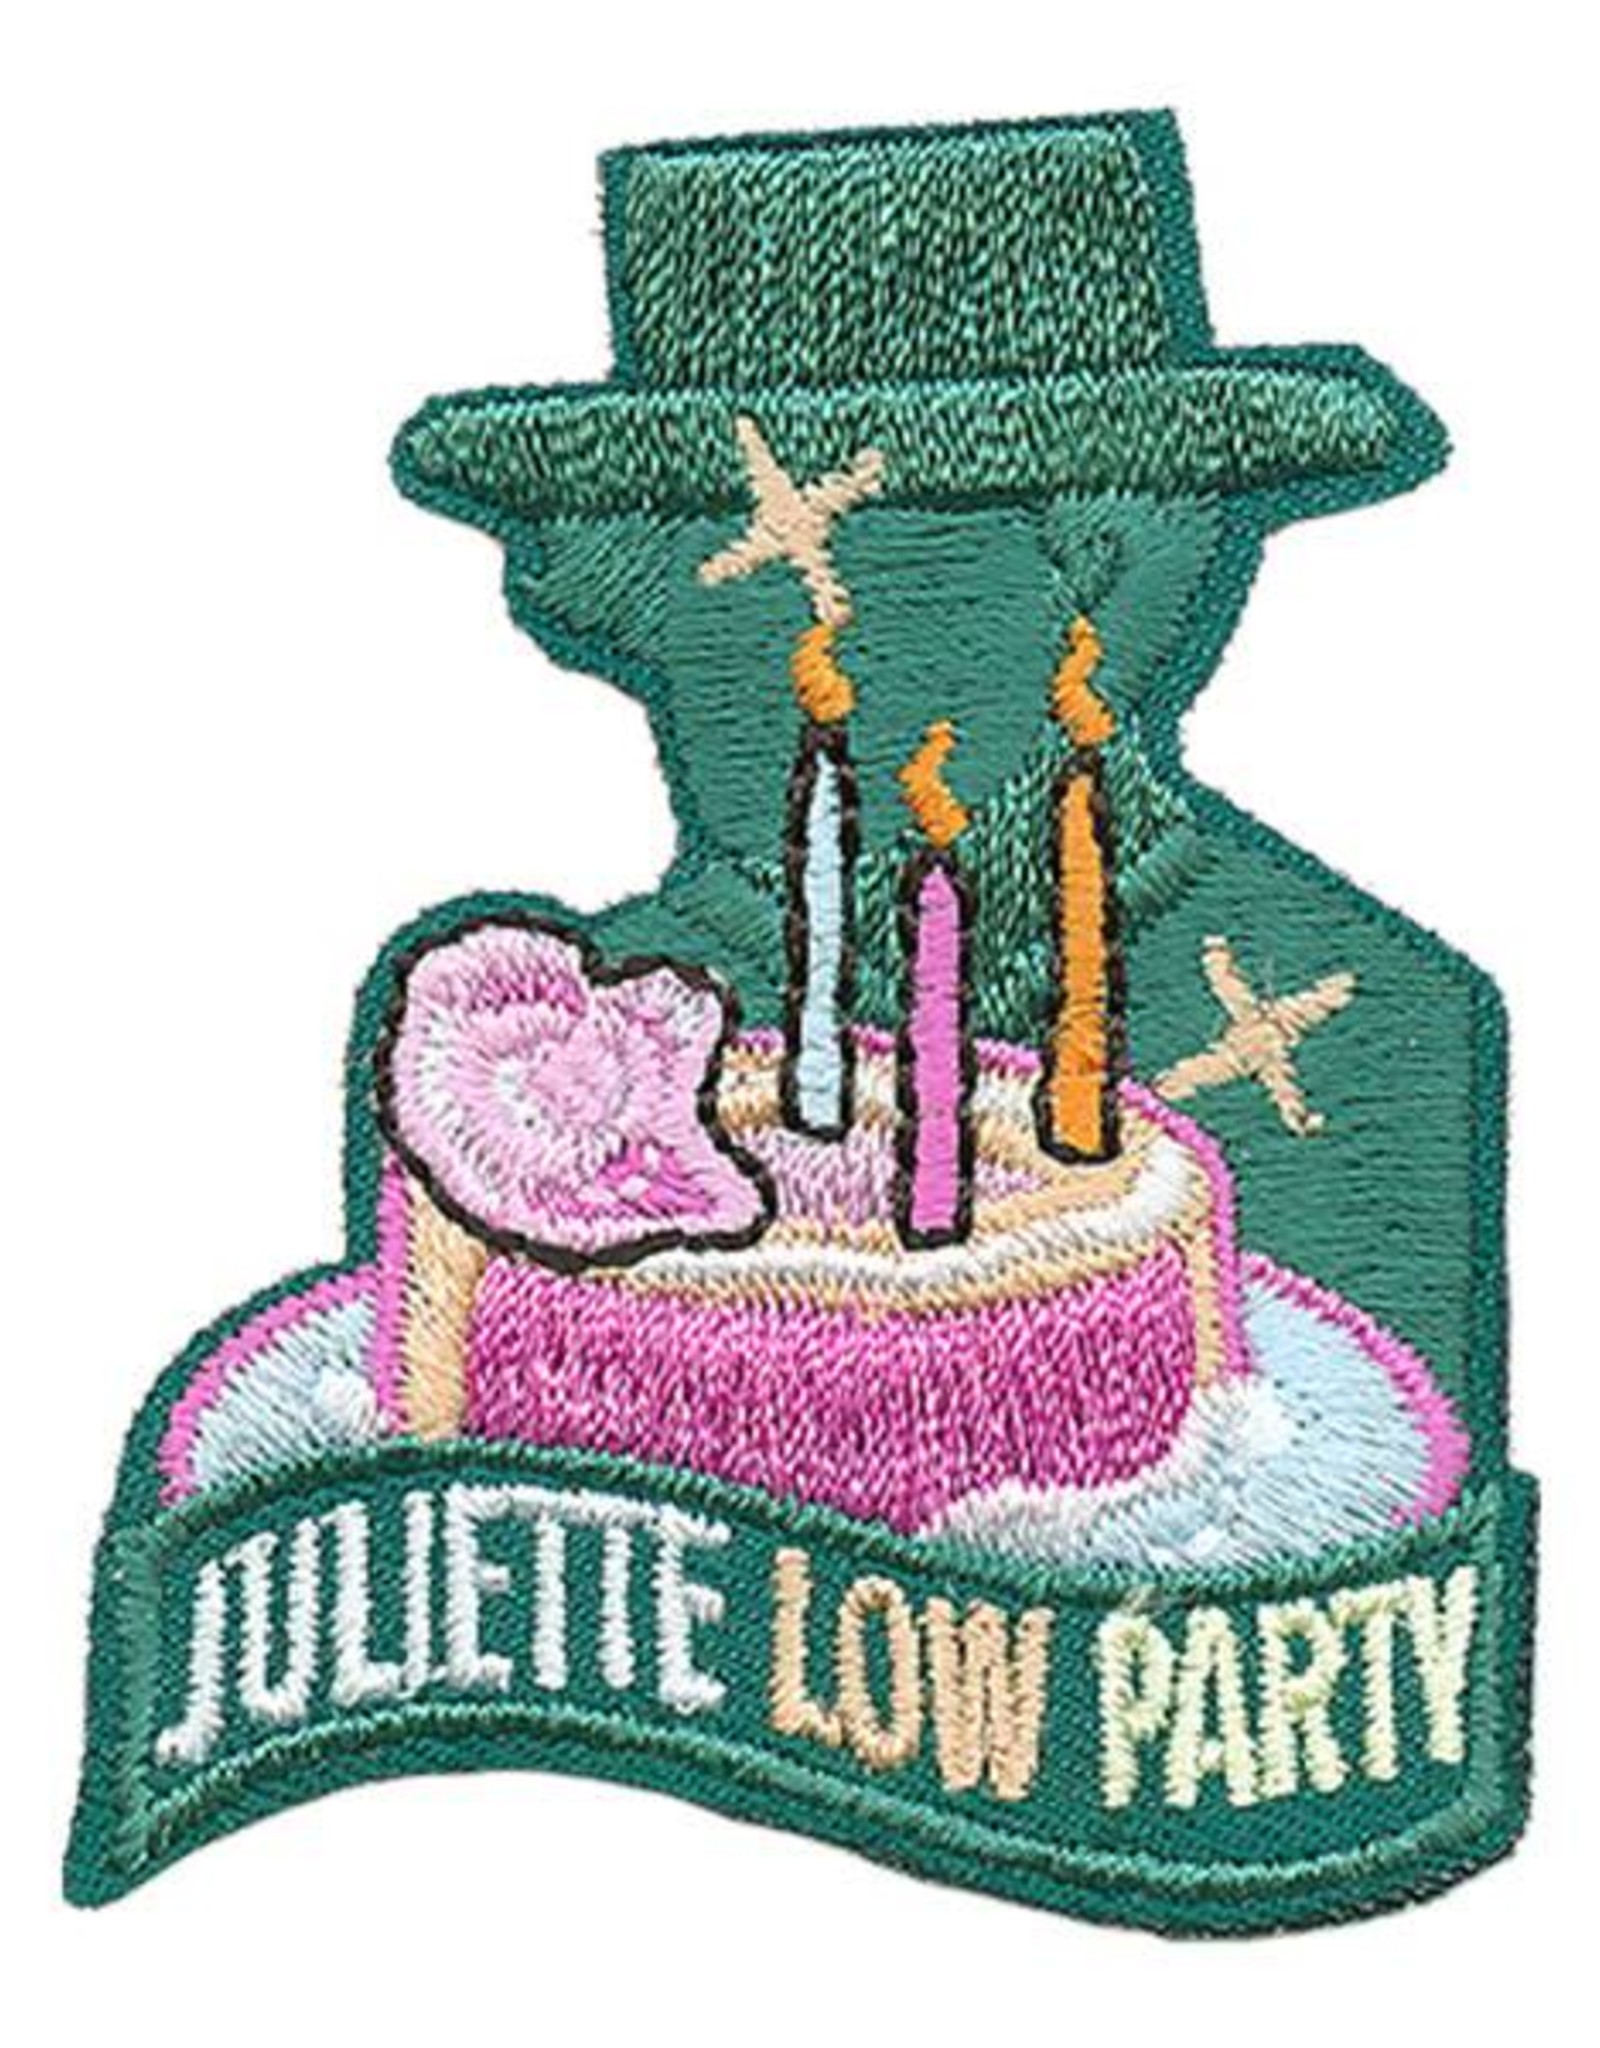 Advantage Emblem & Screen Prnt *Juliette Low Party Fun Patch